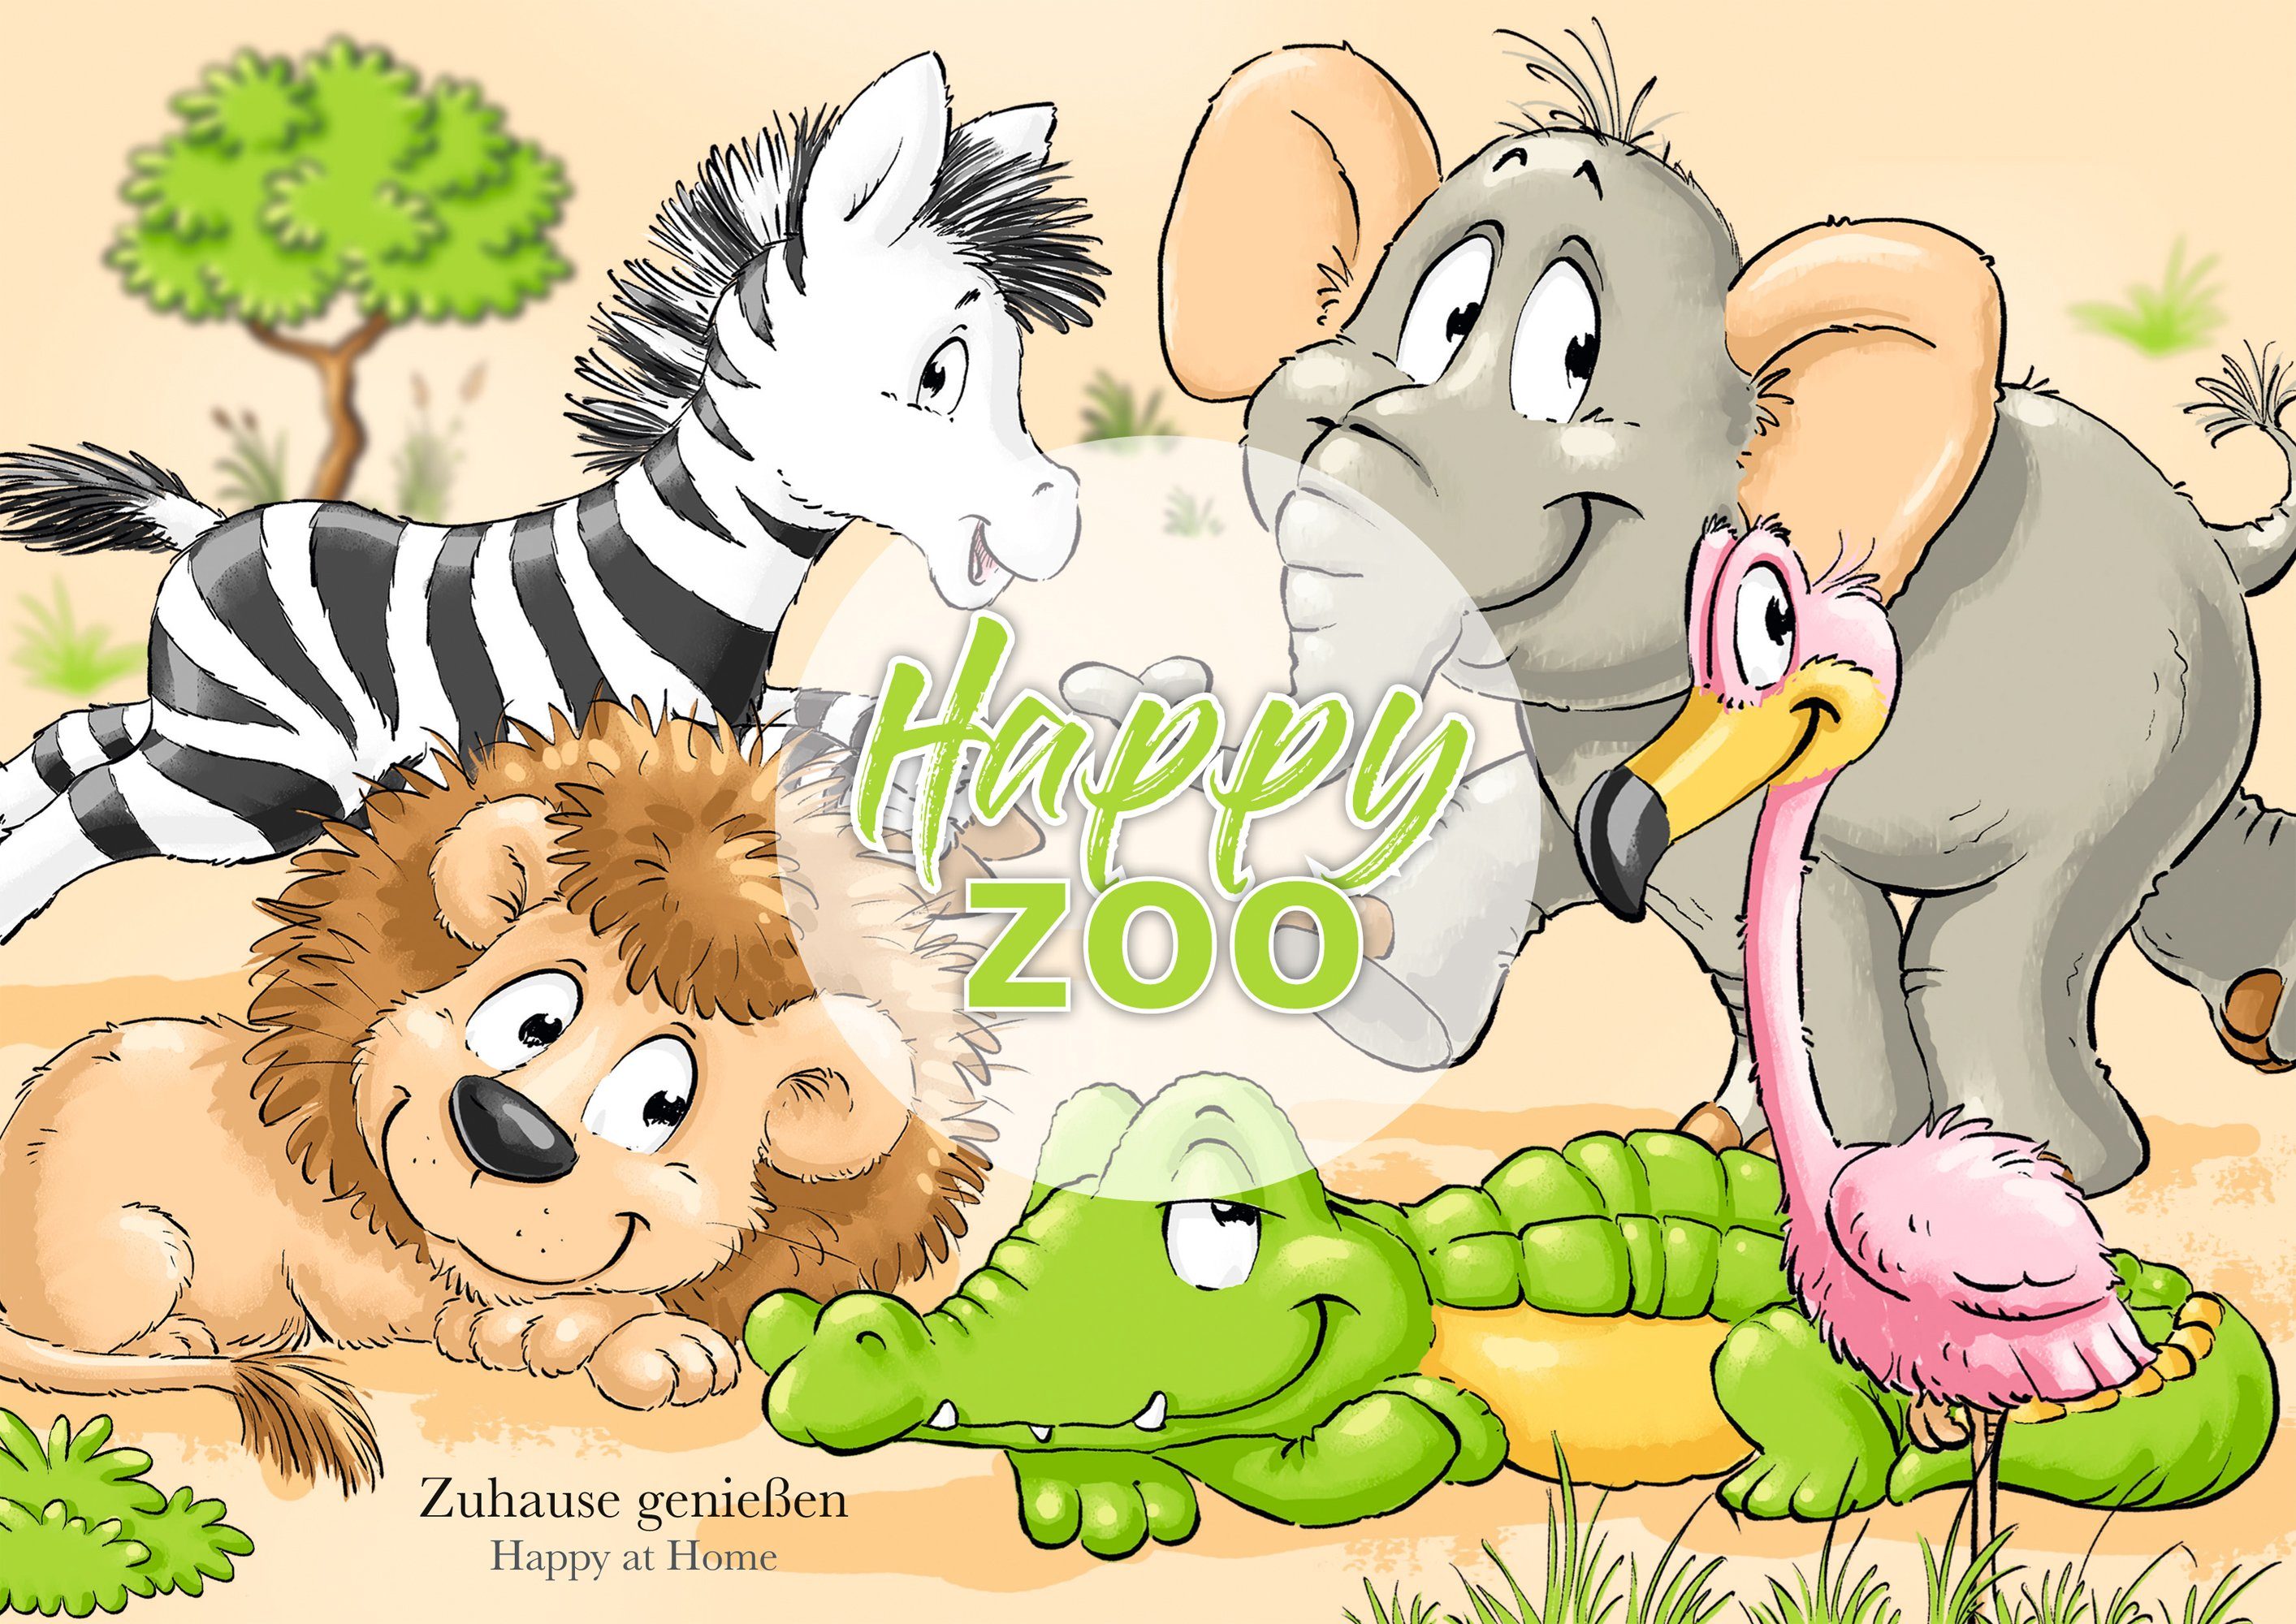 Ritzenhoff & (3-tlg), Breker Zoo, Kindergeschirr-Set Teile, 3 Personen, 1 mit Person Happy für Koko 1 Krokodil-Dekor, Porzellan